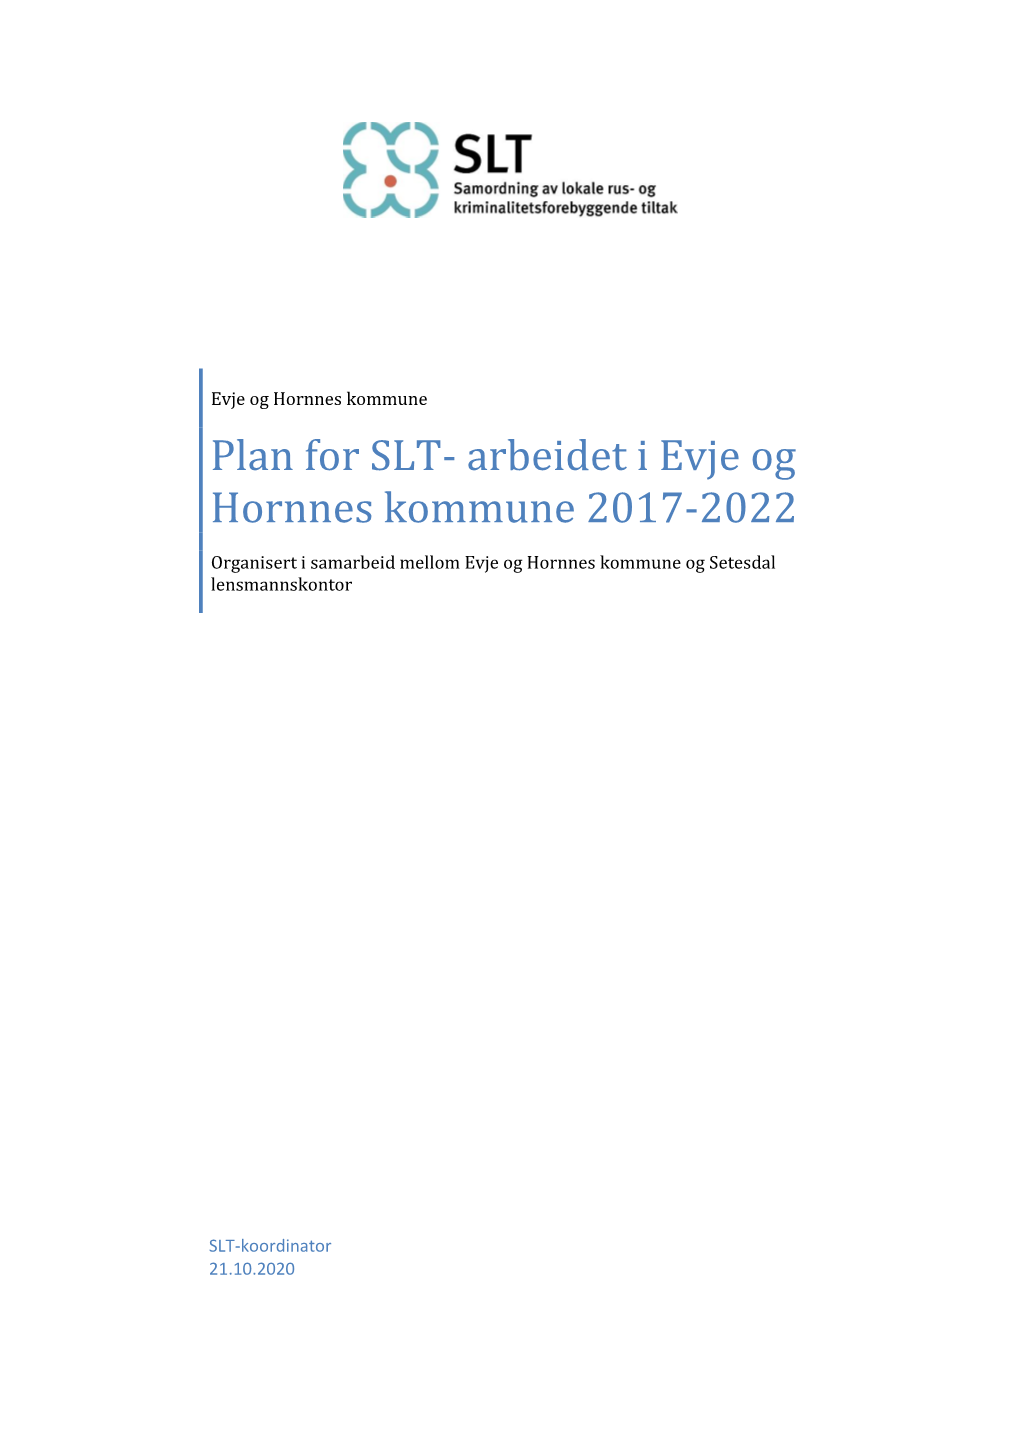 Plan for SLT- Arbeidet I Evje Og Hornnes Kommune 2017-2022